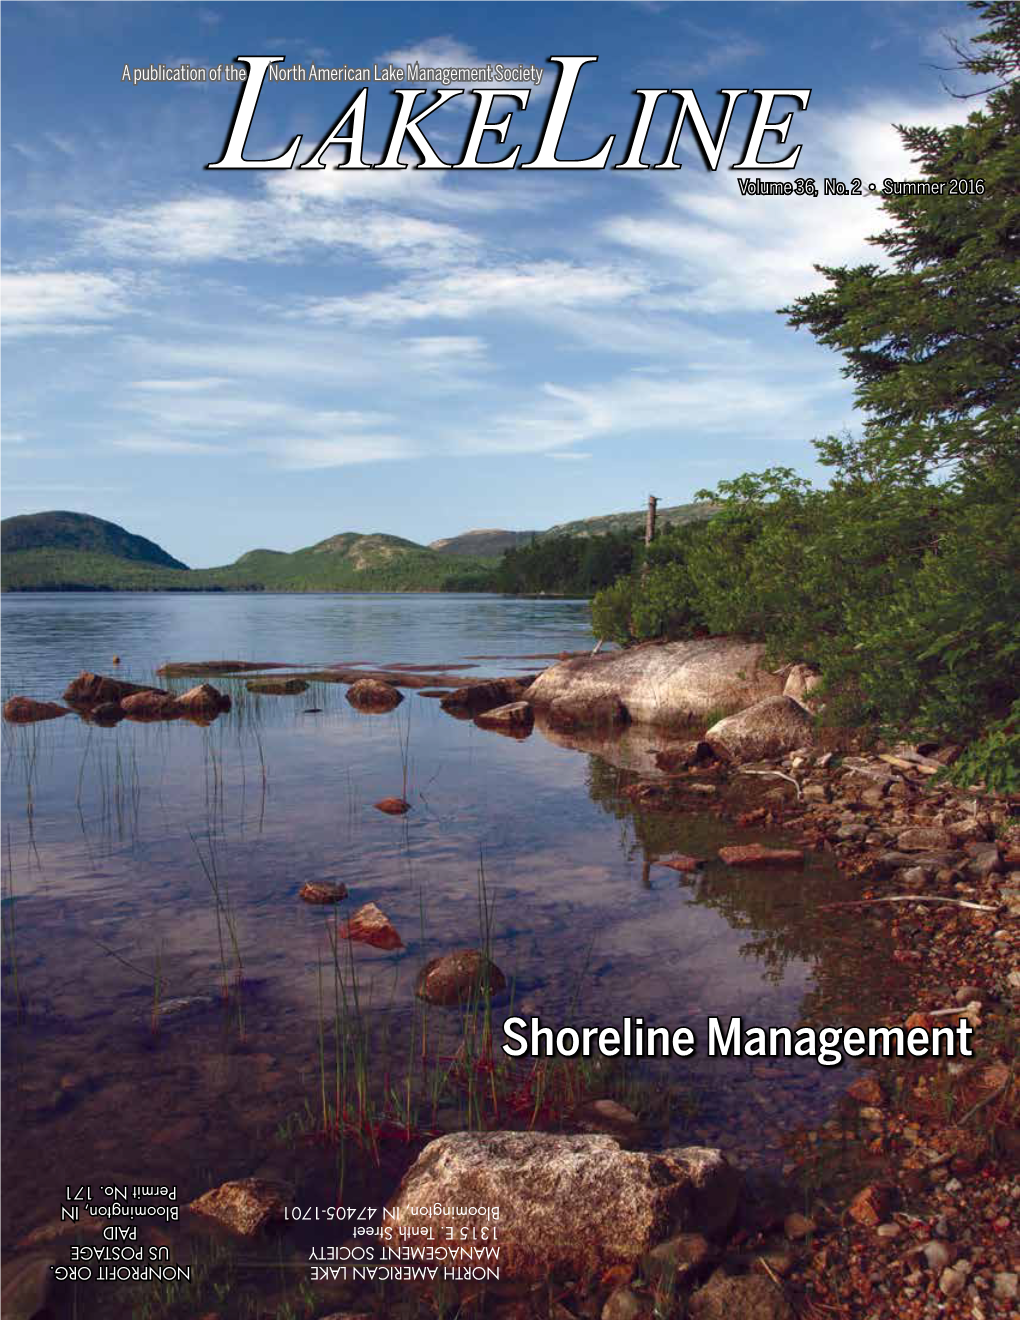 Shoreline Management